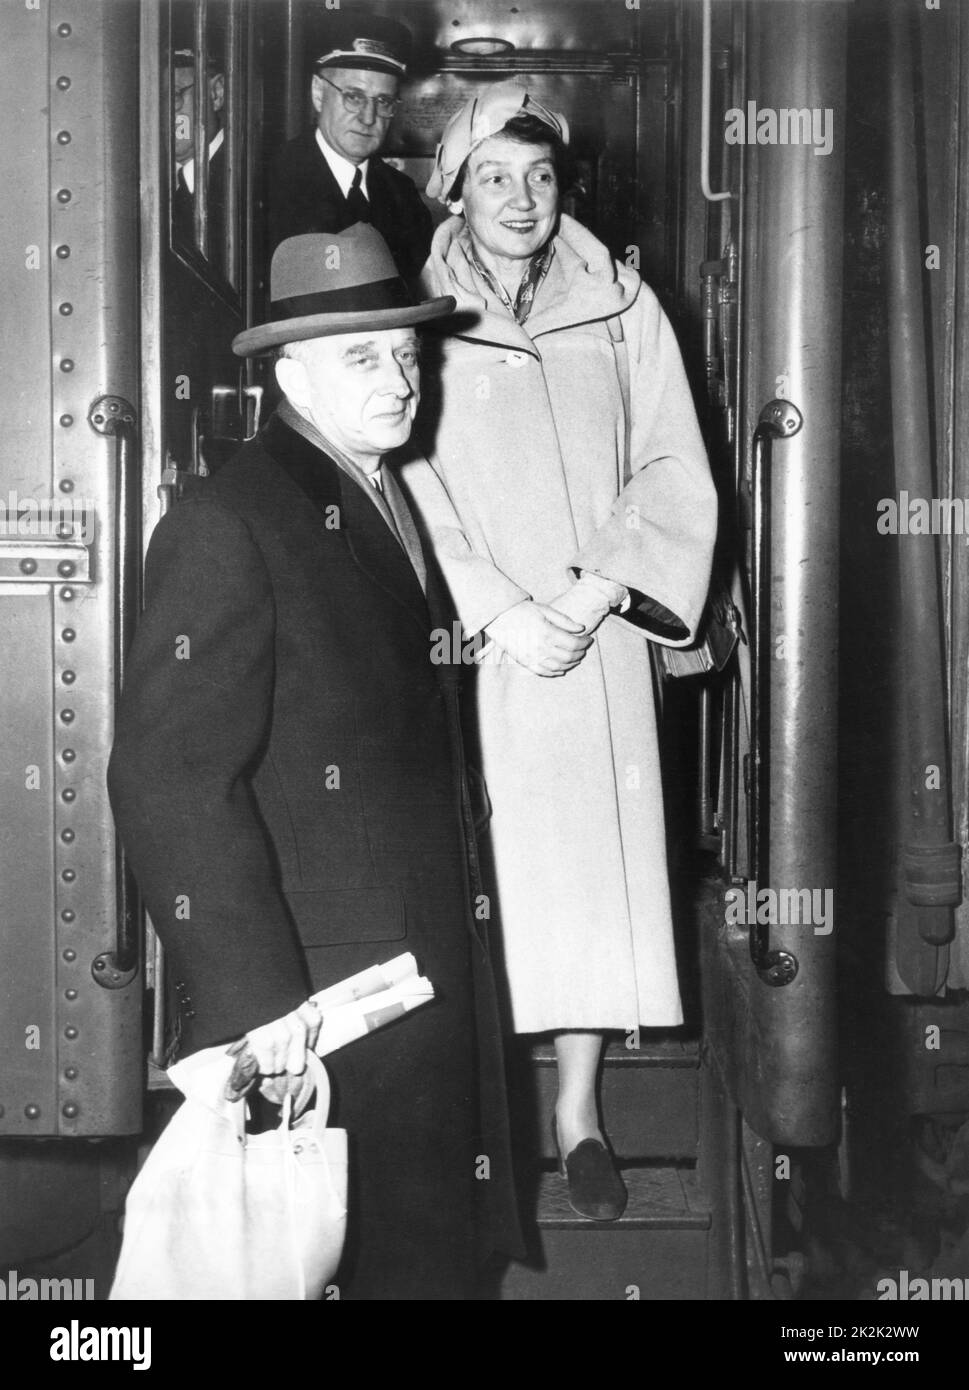 DER US-Diplomat Philip Caryl Jessup und seine Frau Lois Walcott Kellogg eilen nach Hause, um auf die Anschuldigungen von Senator McCarthy wegen seiner "Affinität zu kommunistischen Organisationen" zu antworten. März 1950 Stockfoto